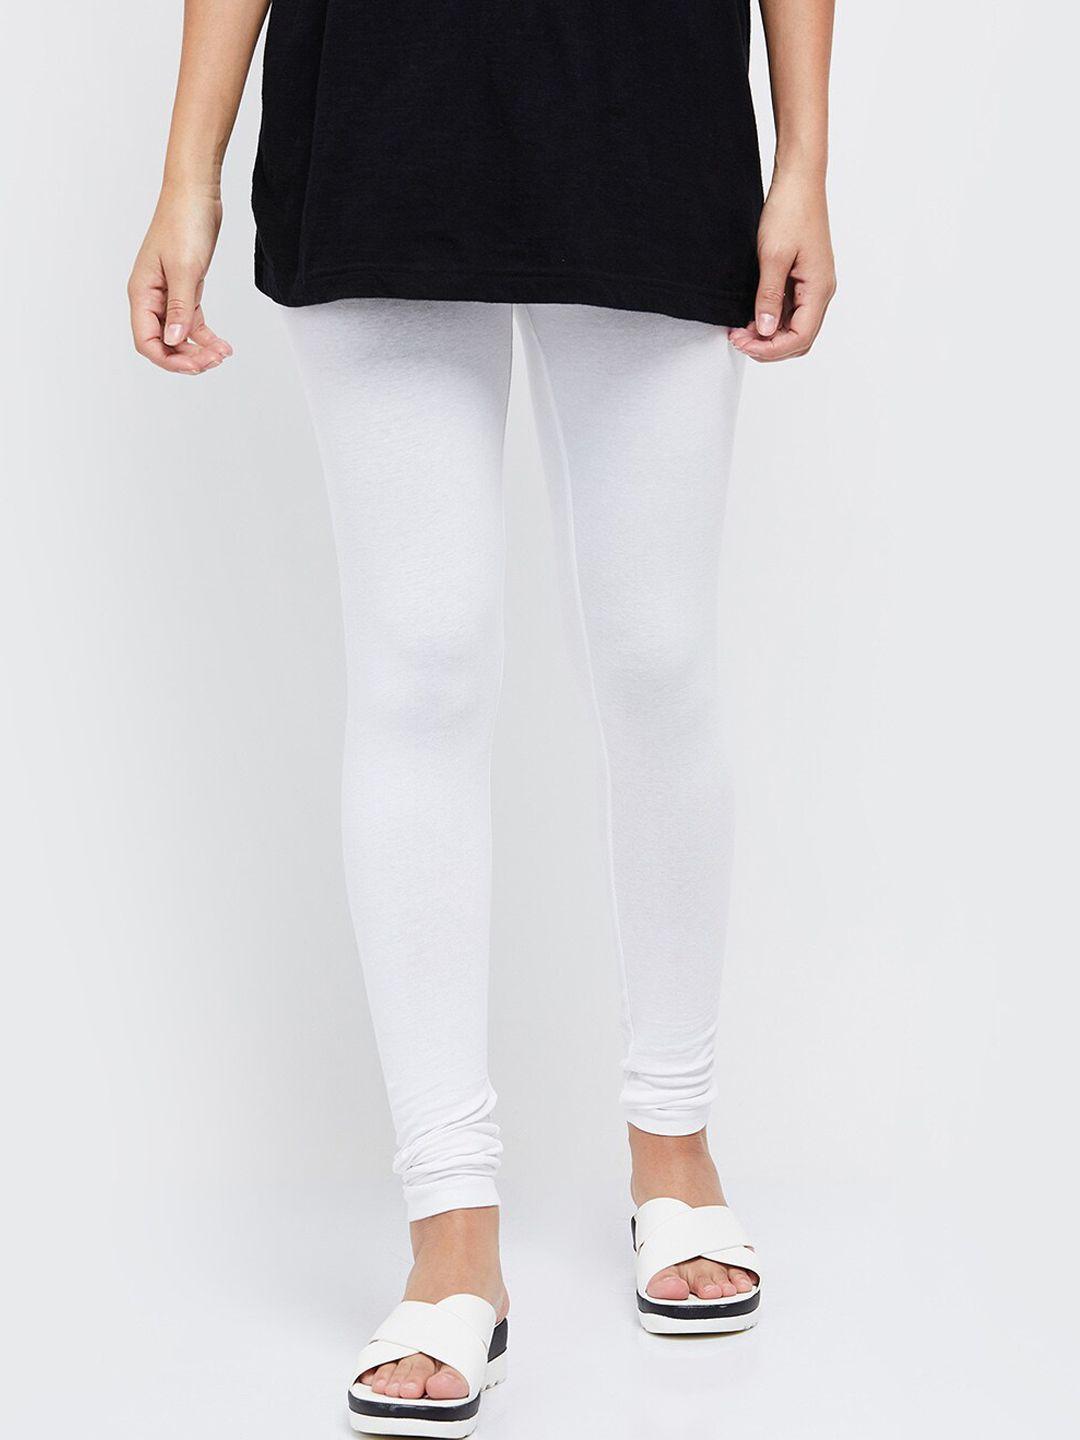 max-women-white-solid-churidar-length-leggings